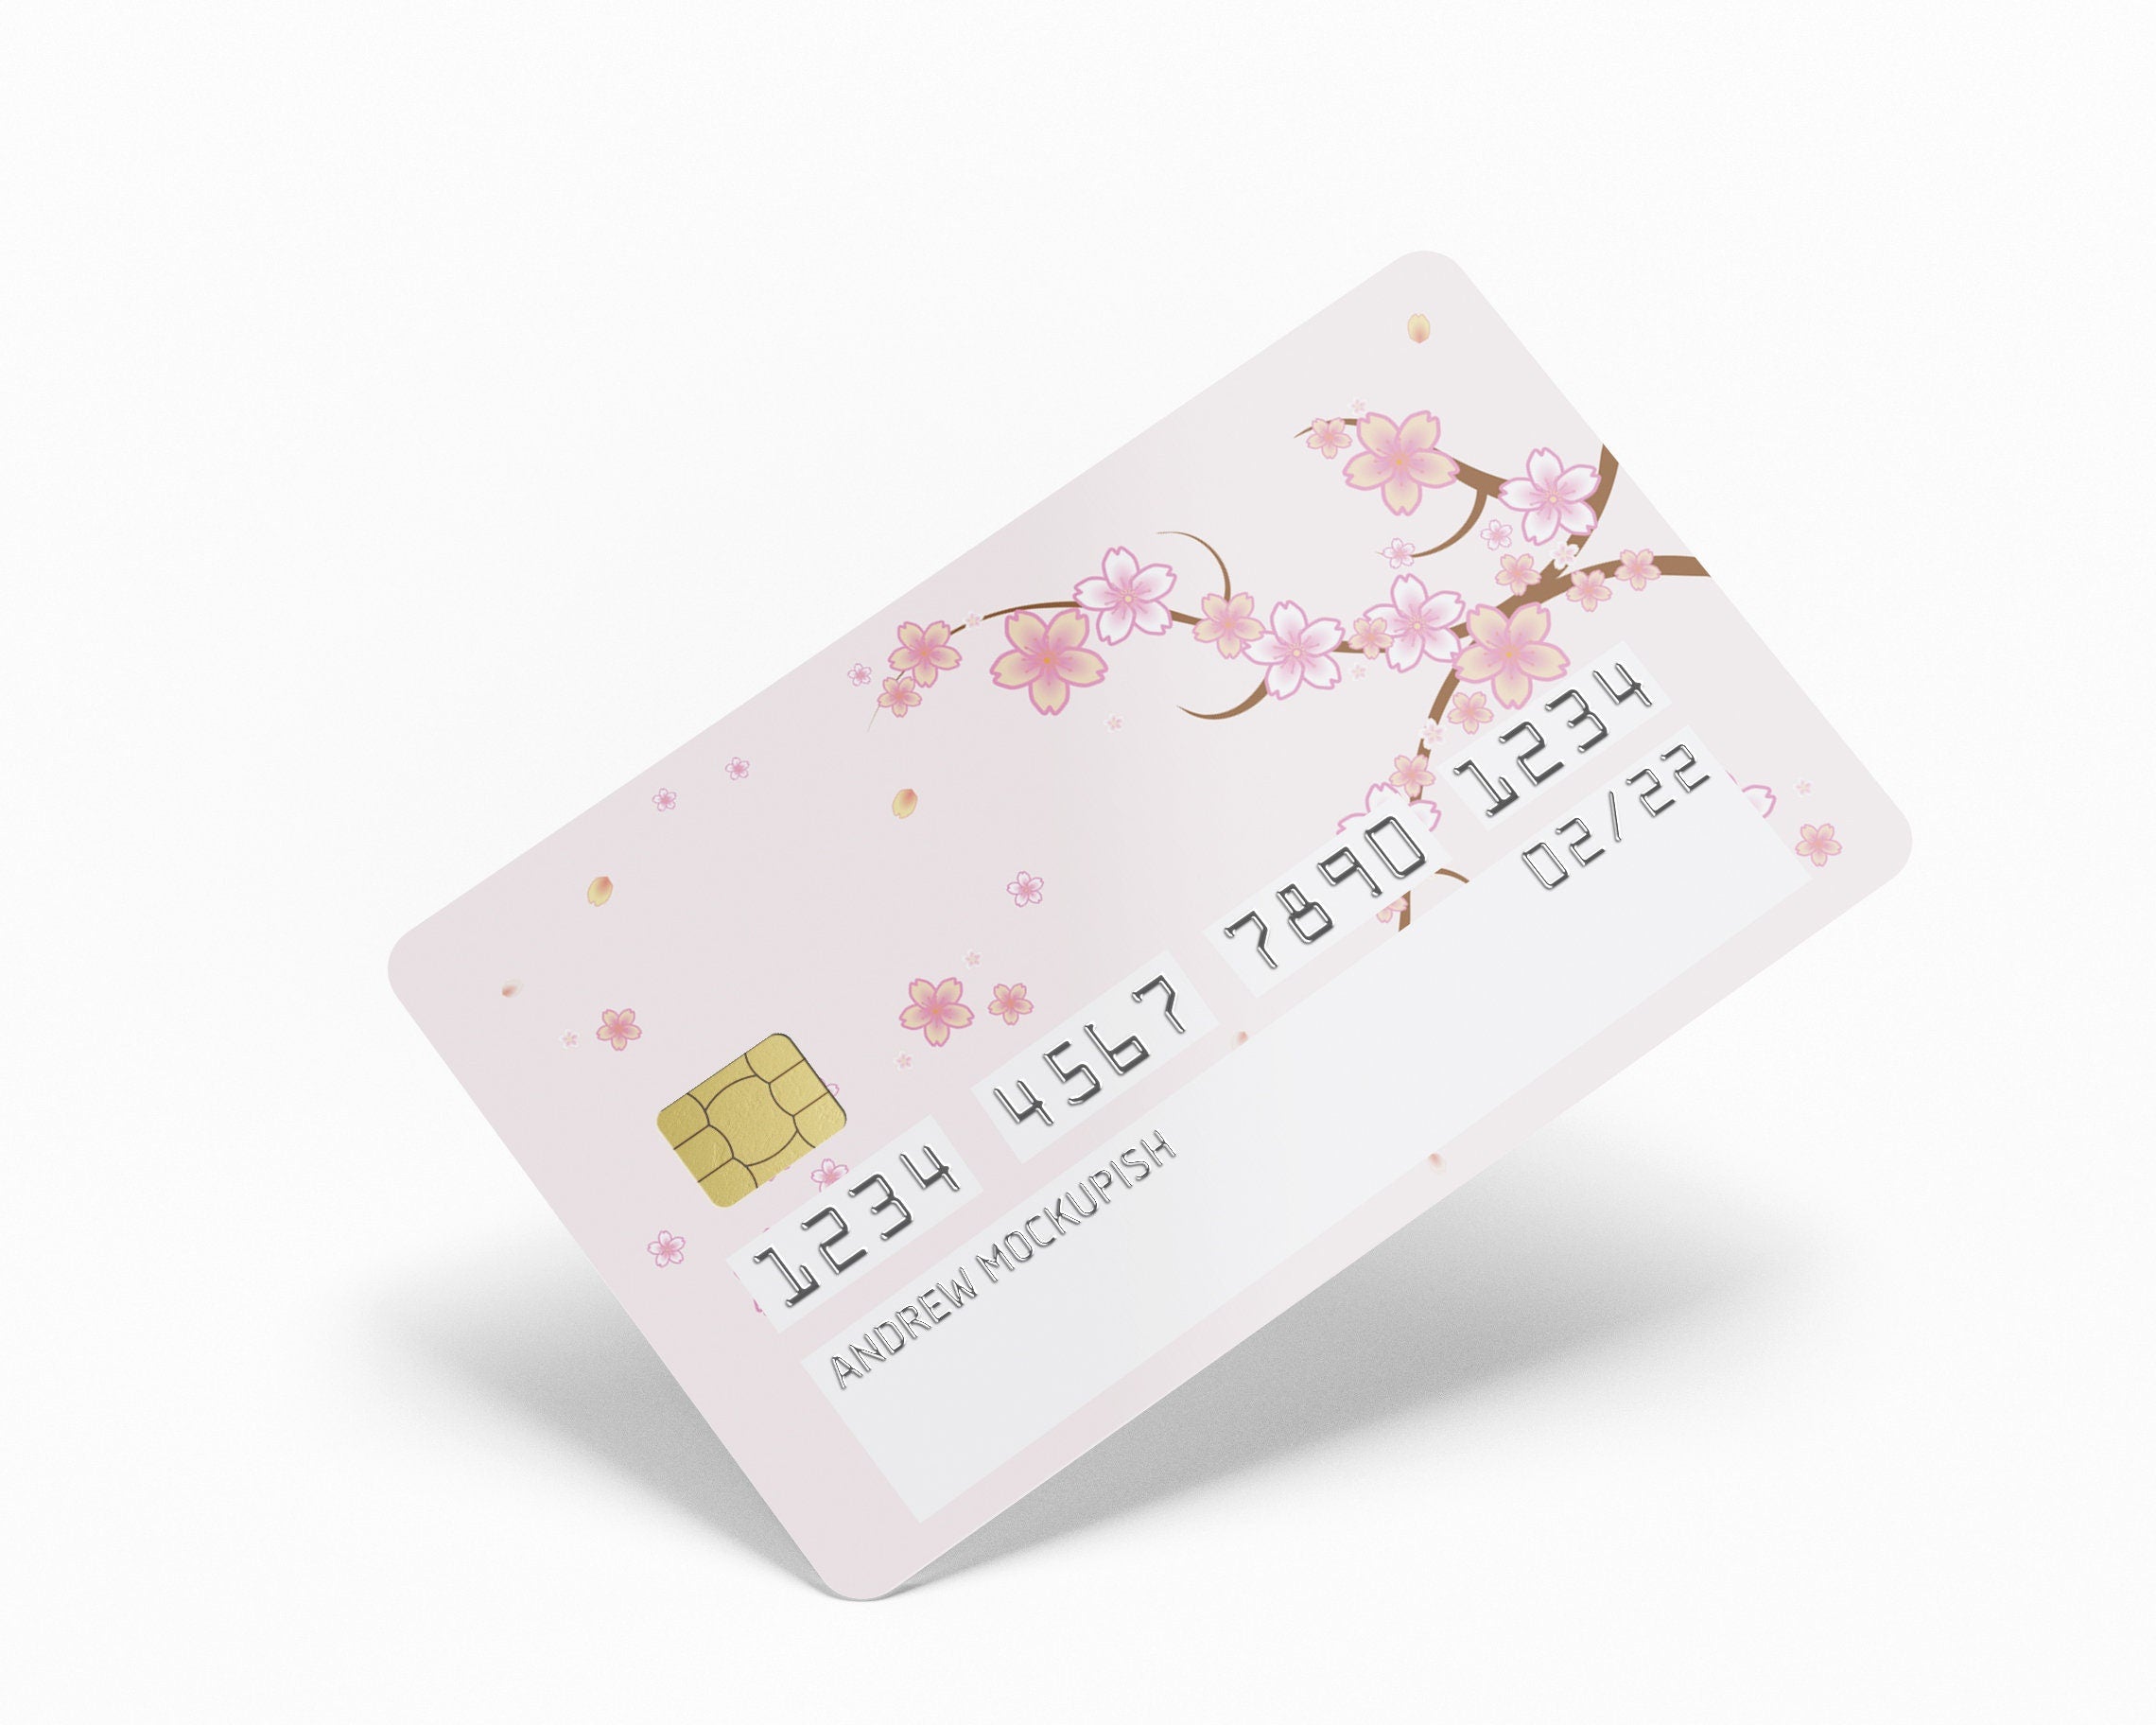 Credit/Debit Card Skins